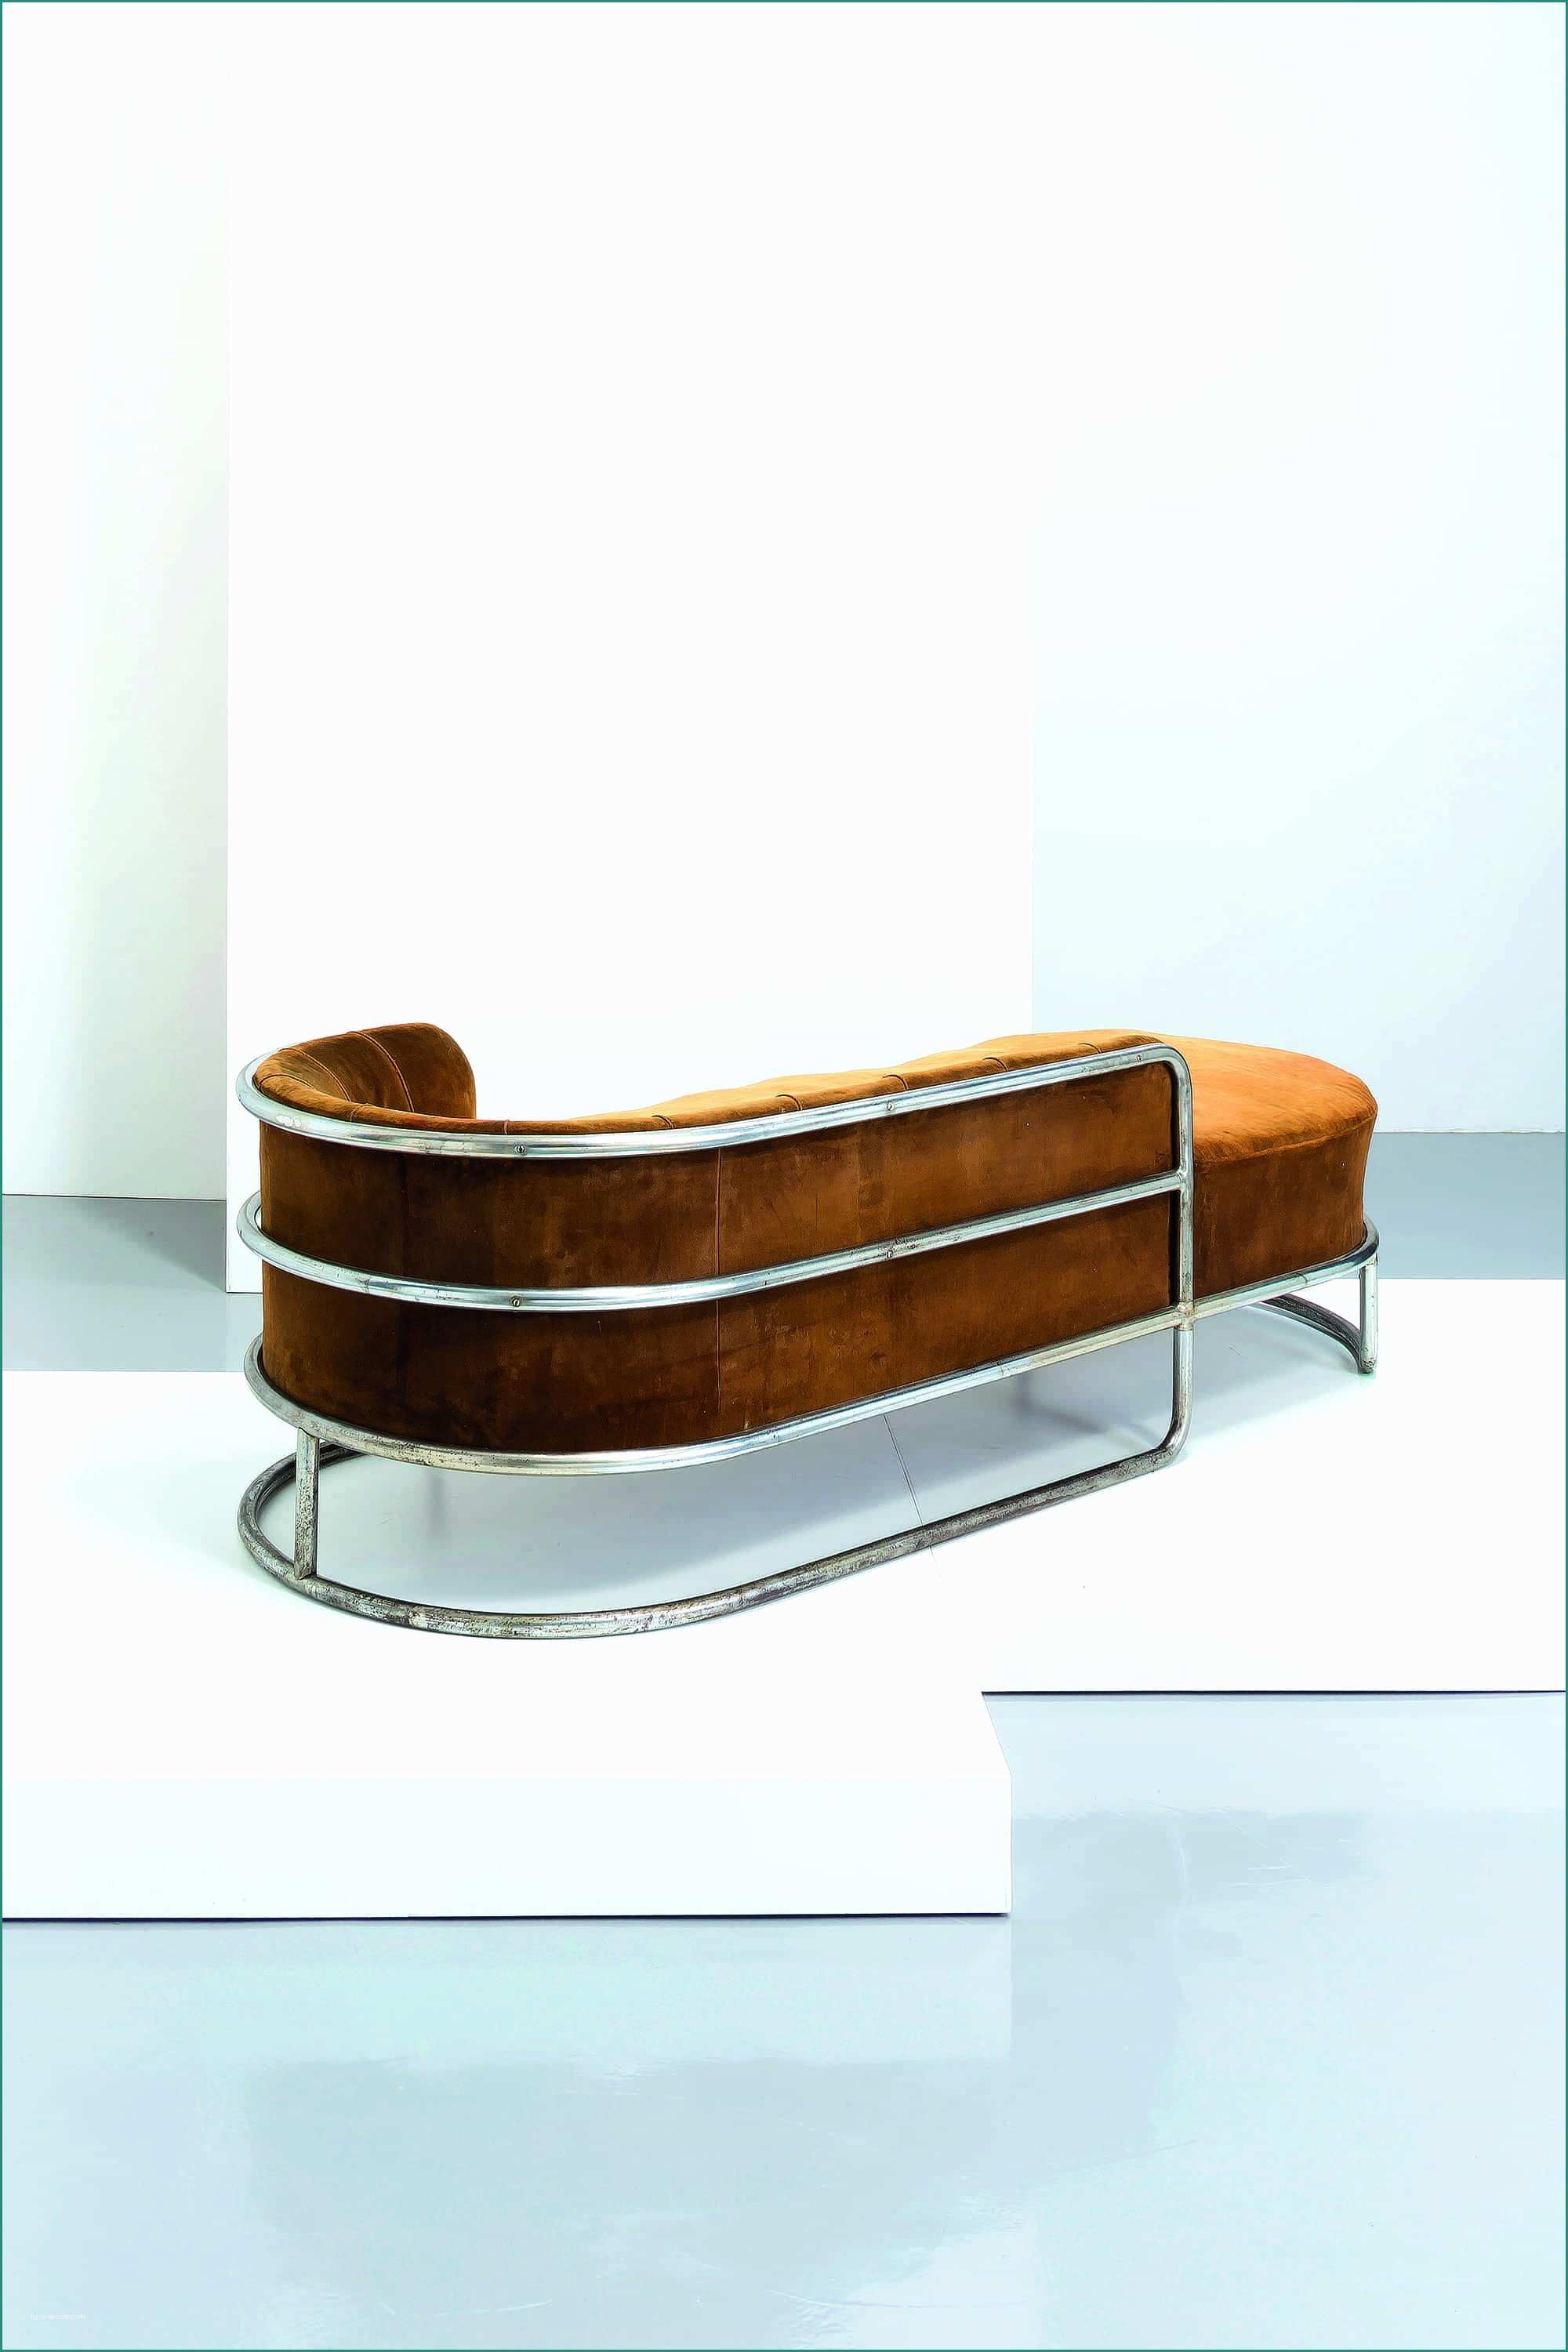 Poltrona Chaise Longue E Chaise Bauhaus Best Luxury Furntiure Chaise Longue De Vivo 1935